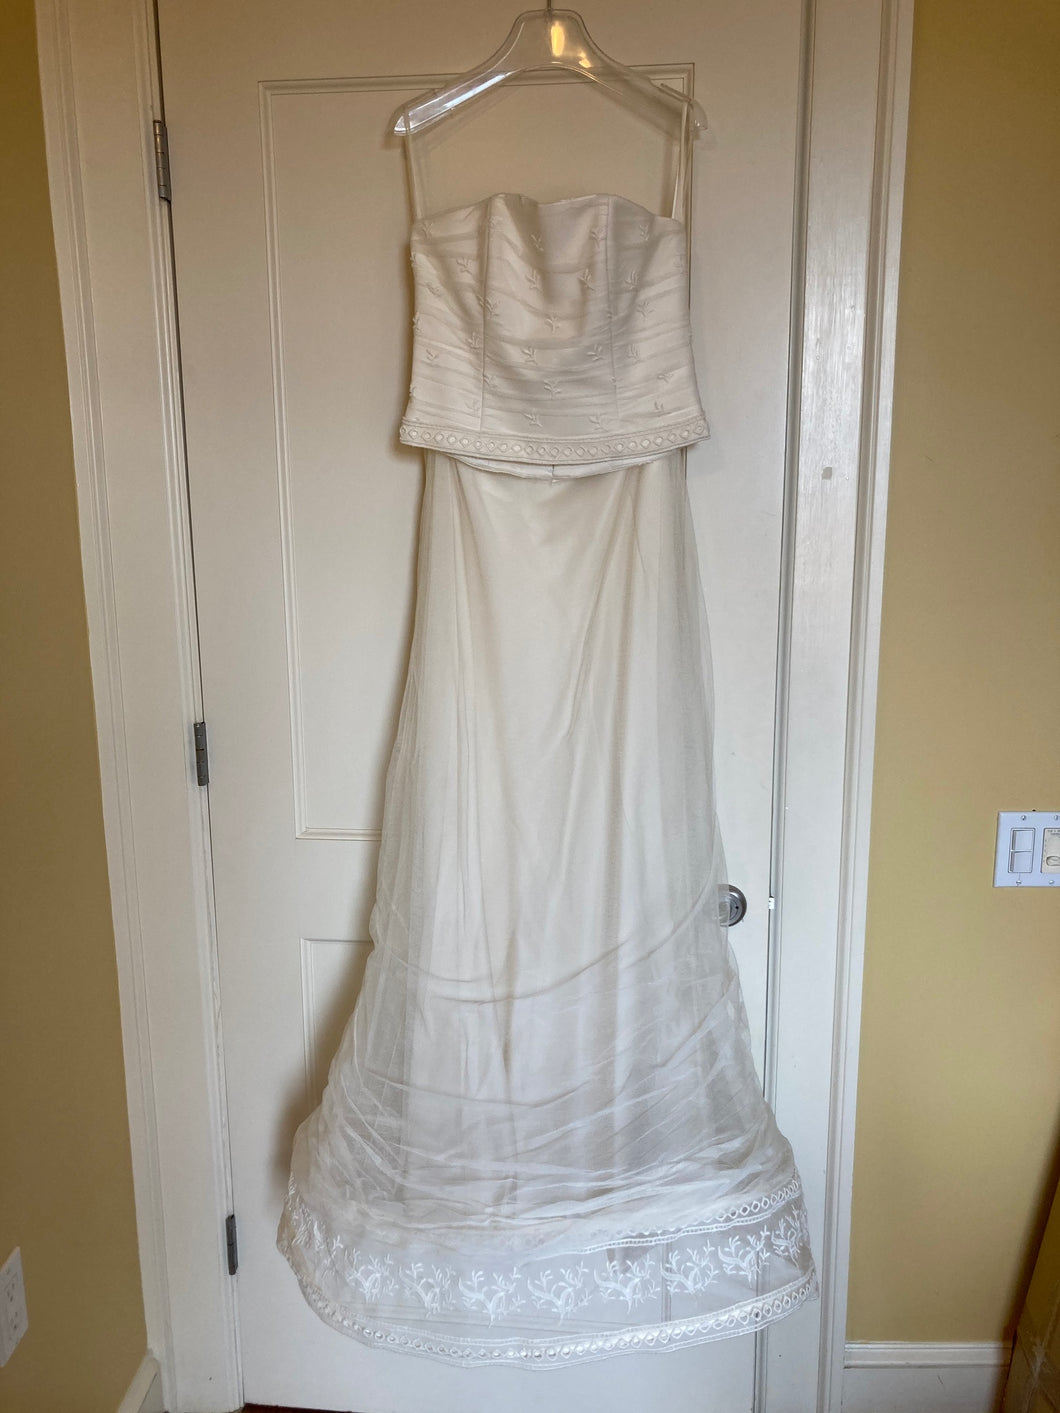 Suzanne Ermann 'Unknown' wedding dress size-10 NEW